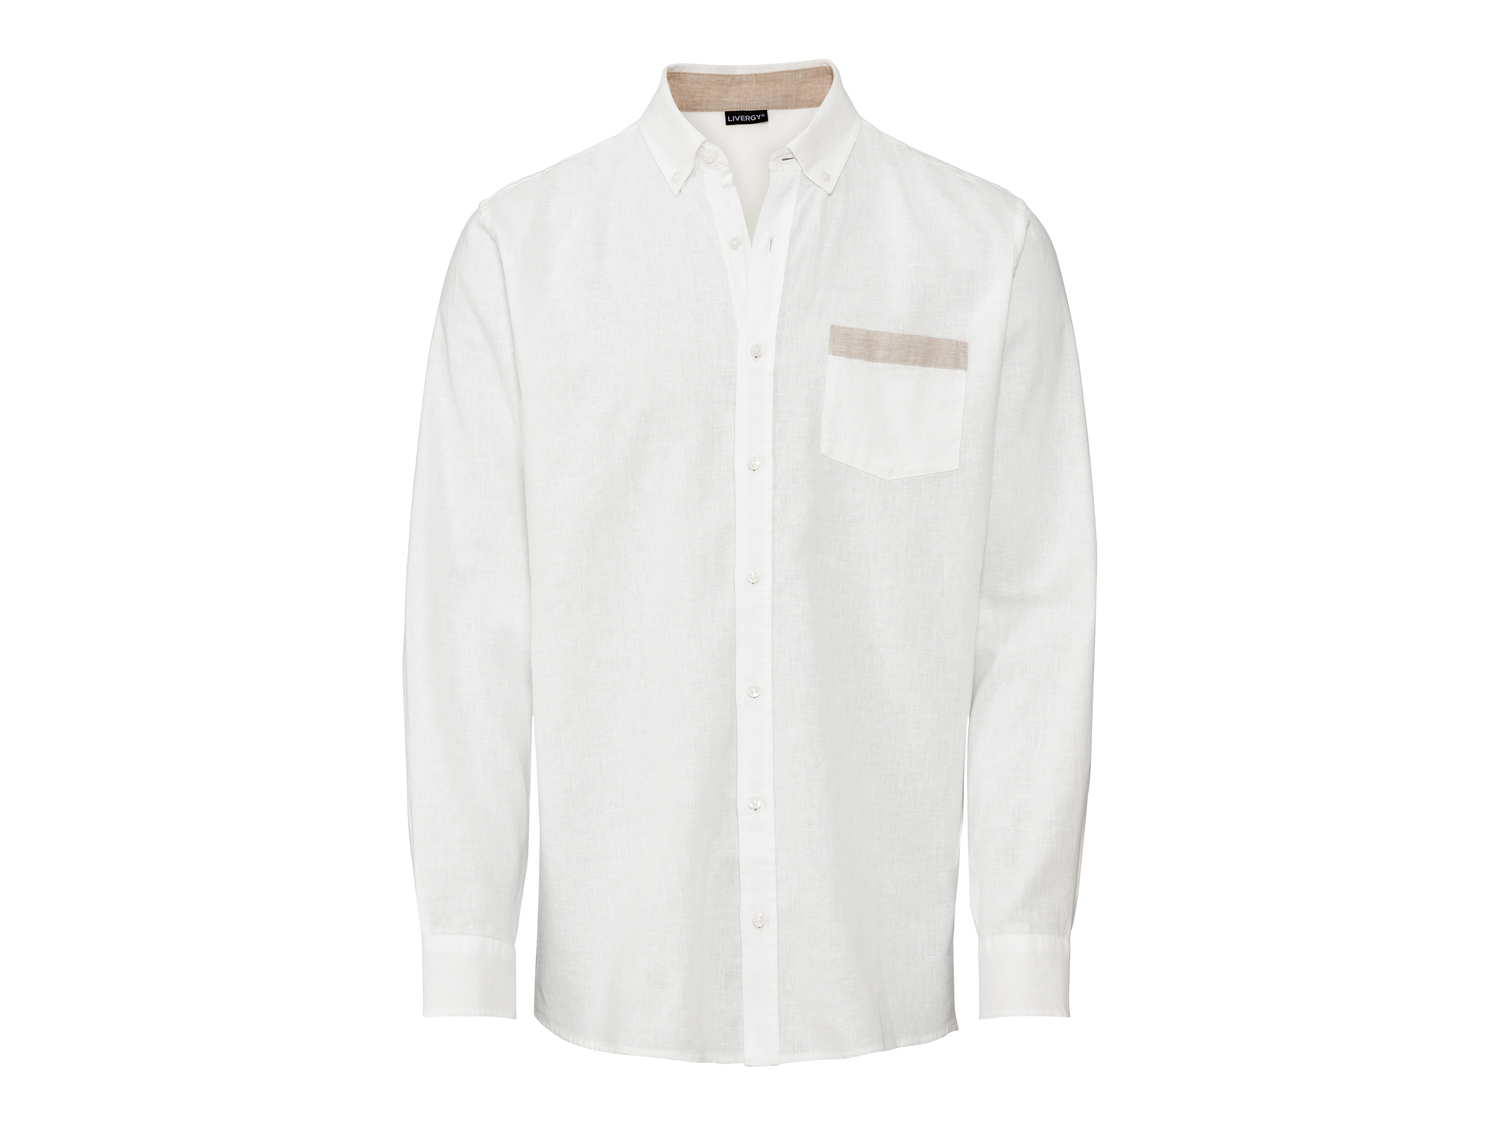 Camicia in lino da uomo Livergy, prezzo 9.99 &#8364; 
Misure: S-XL
Taglie disponibili

Caratteristiche

- ...